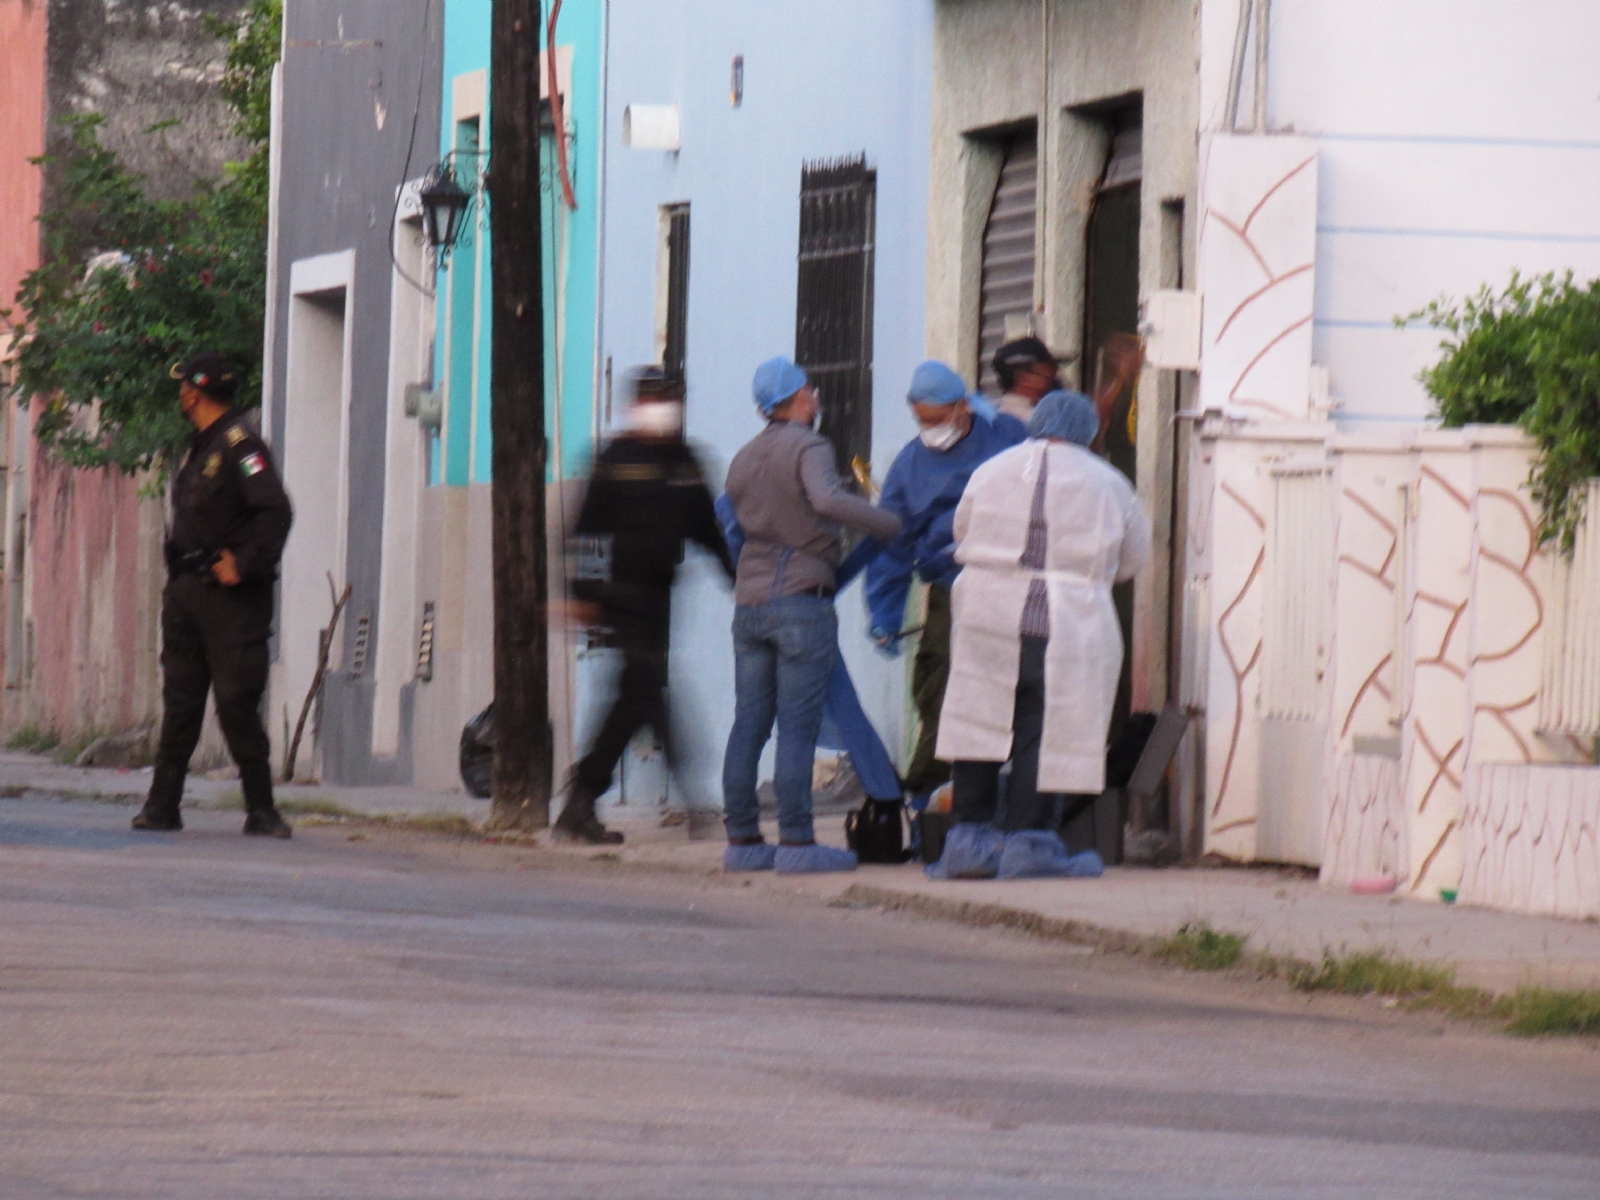 Sobrina de chef baleado en el Centro de Mérida narra cómo fue atacado su tío